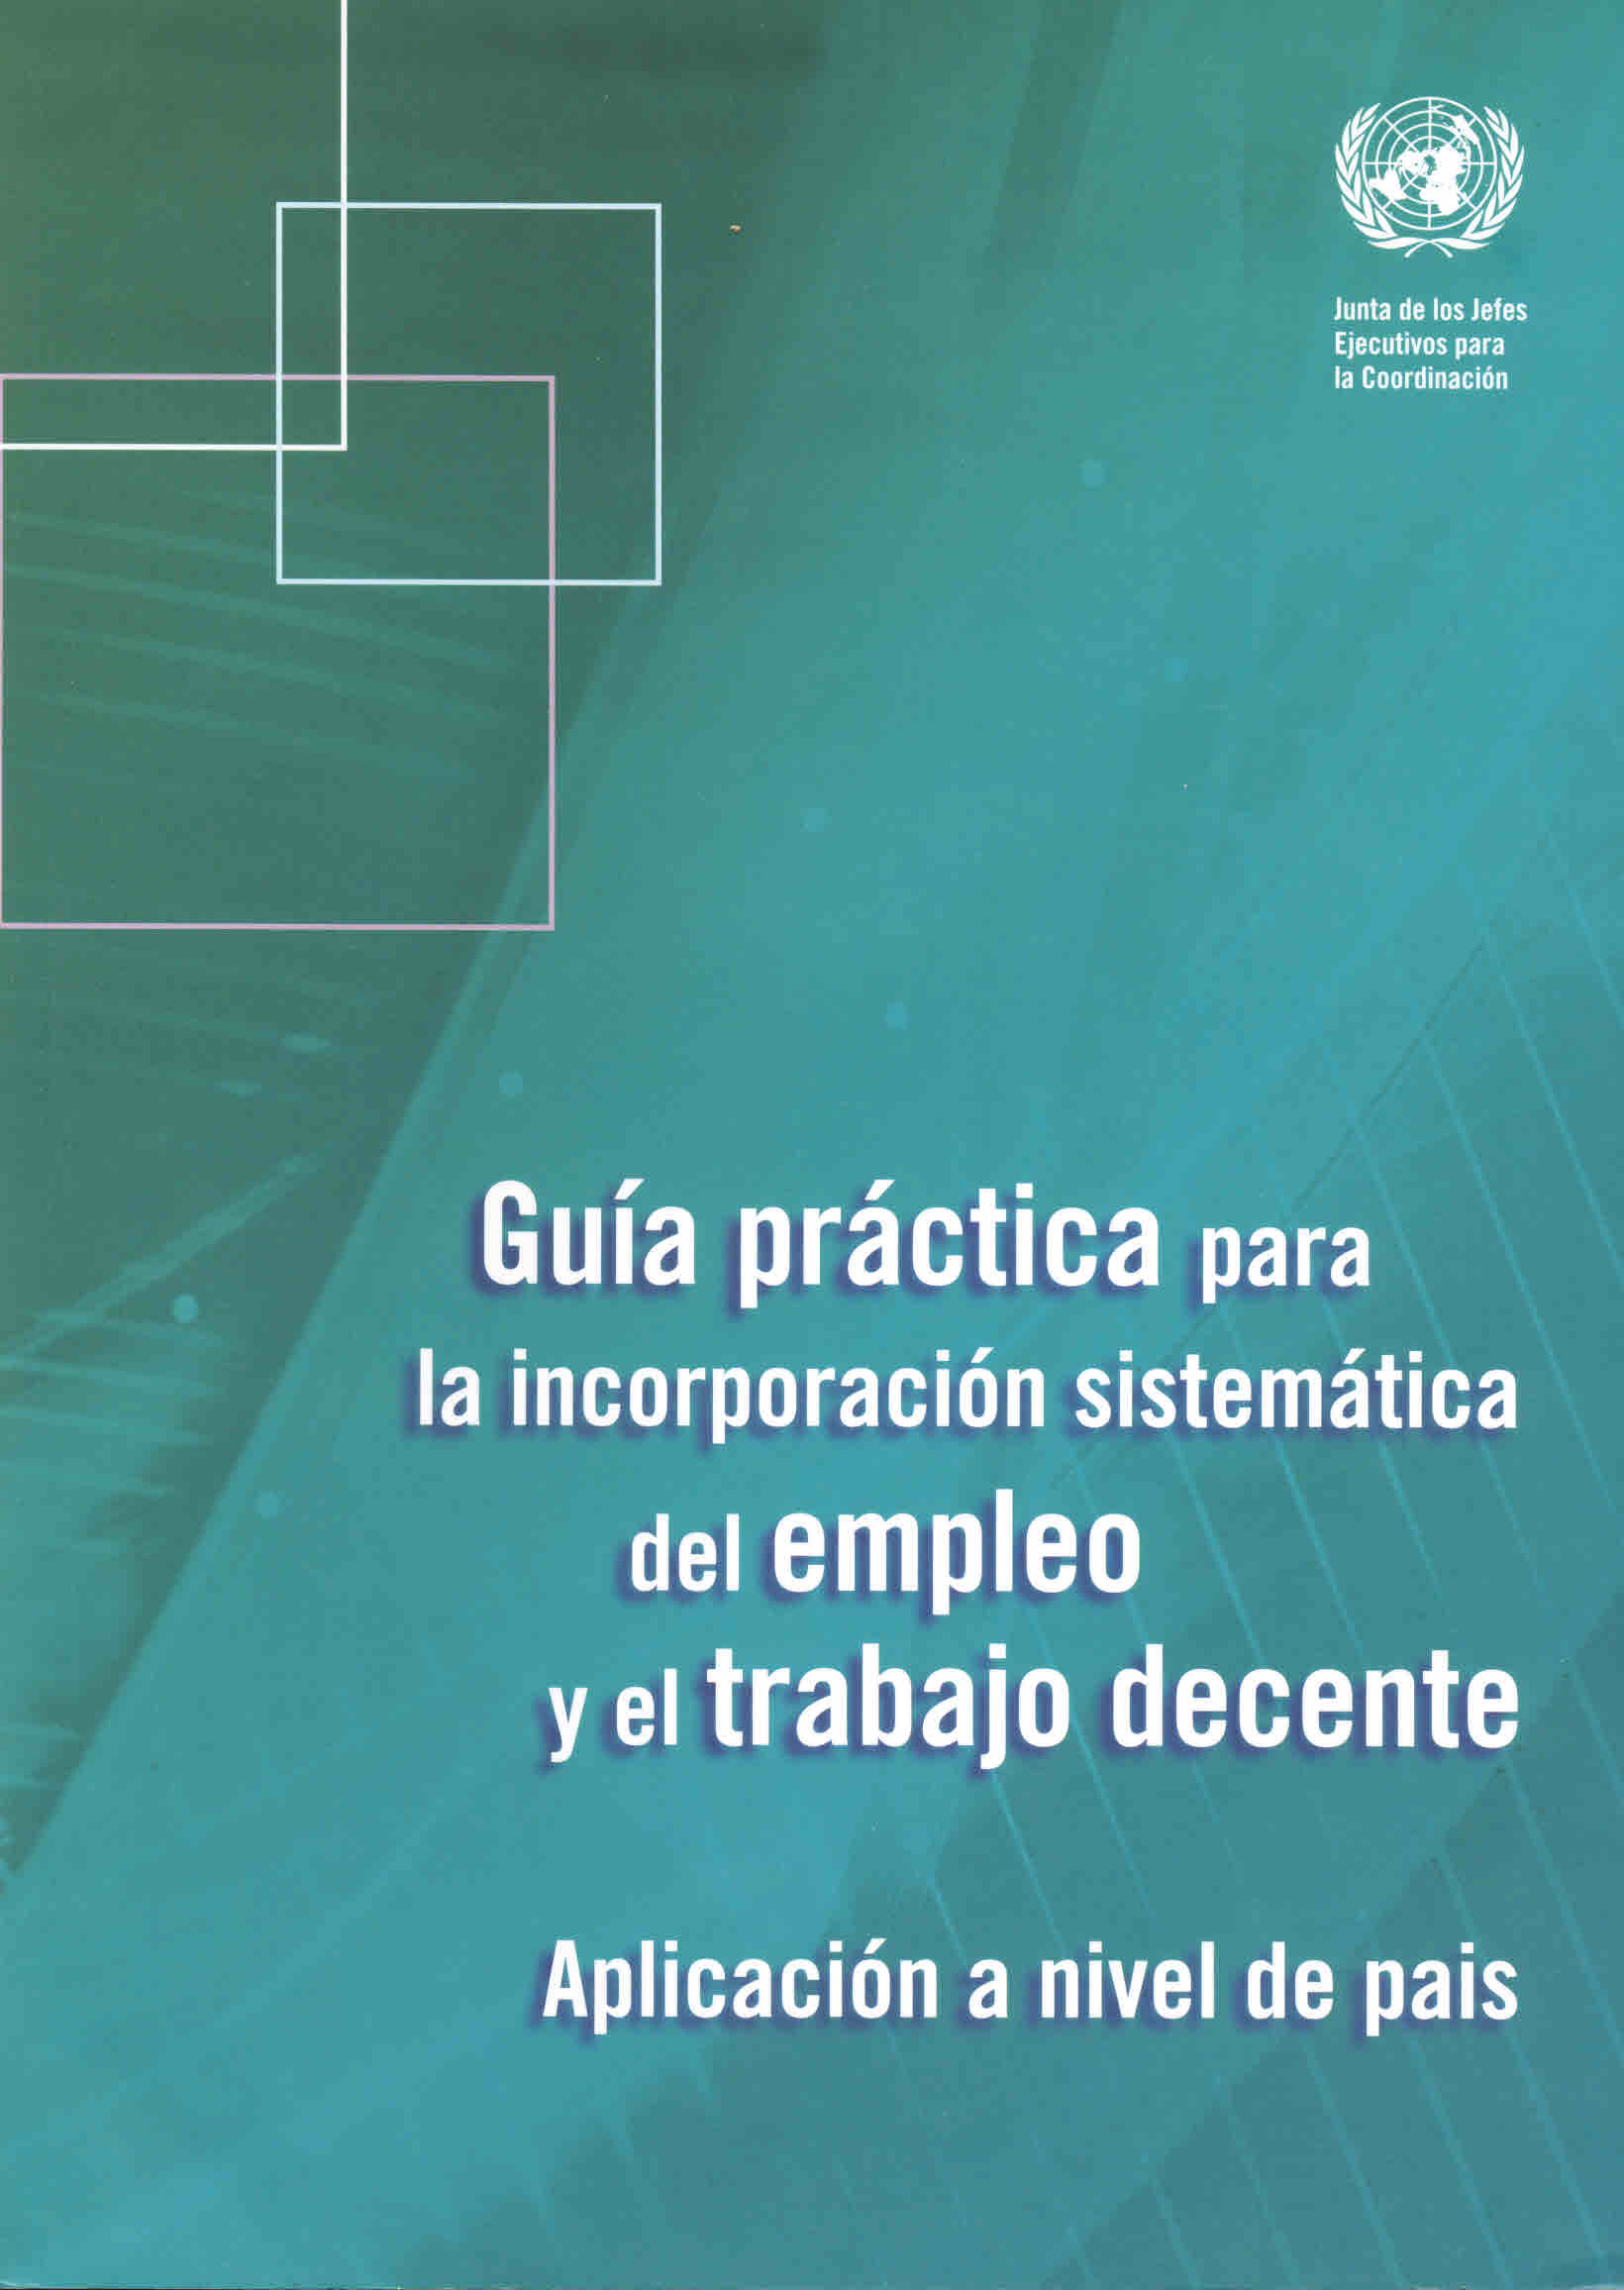 Guía práctica para la incorporación sistemática del empleo y trabajo decente. Aplicación a nivel país